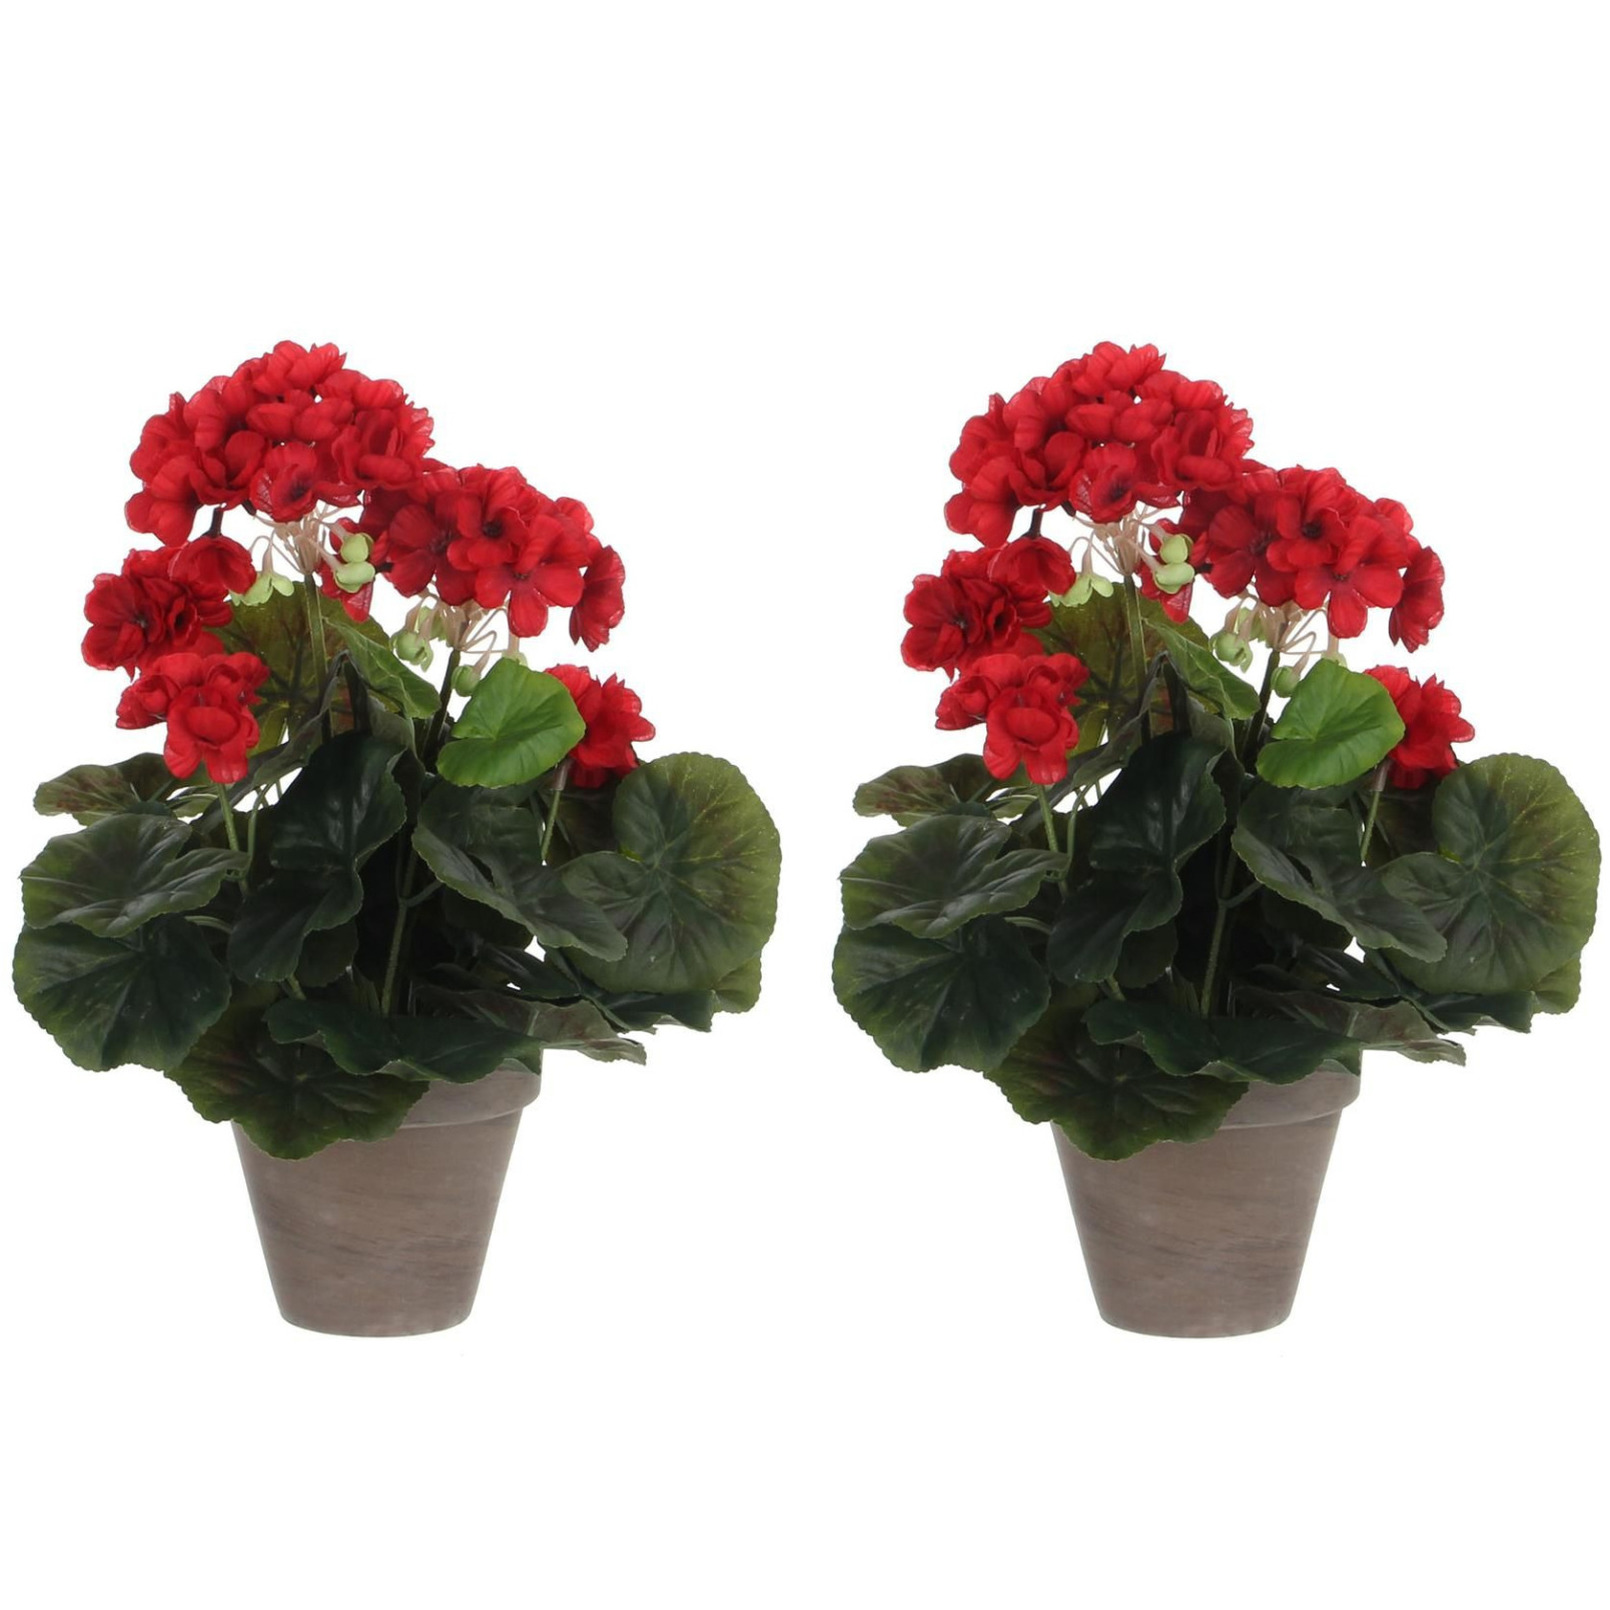 2x stuks geranium kunstplanten rood in keramieken pot H34 x D20 cm